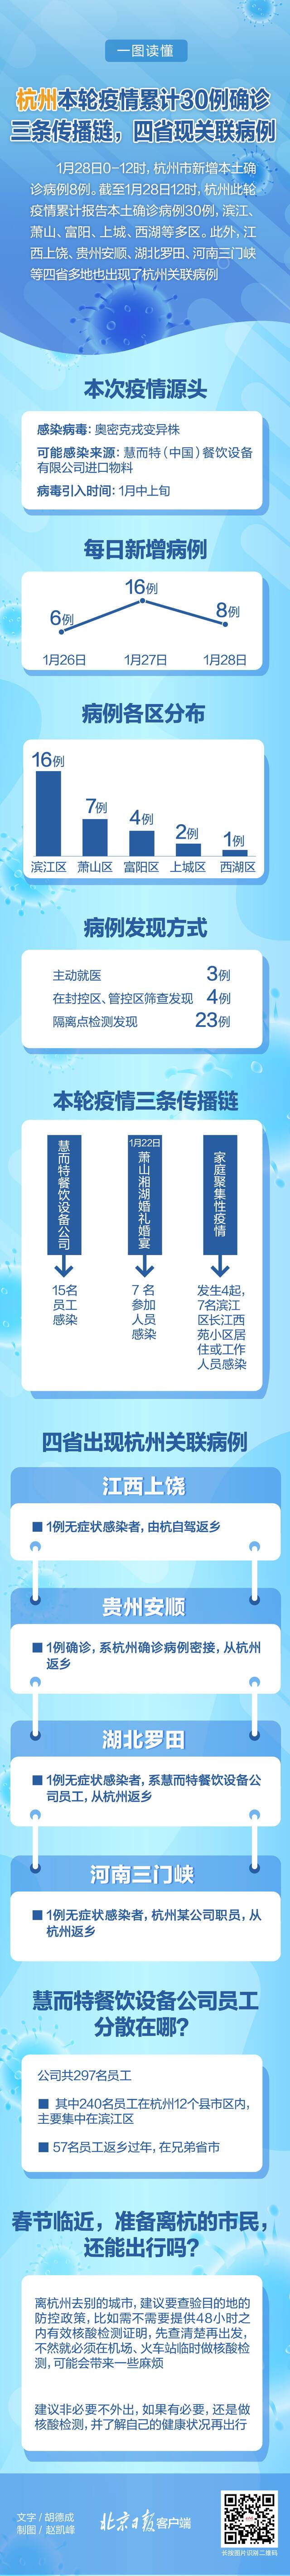 杭州新增12例确诊活动轨迹涉及婚礼葬礼 目前累计确诊40例